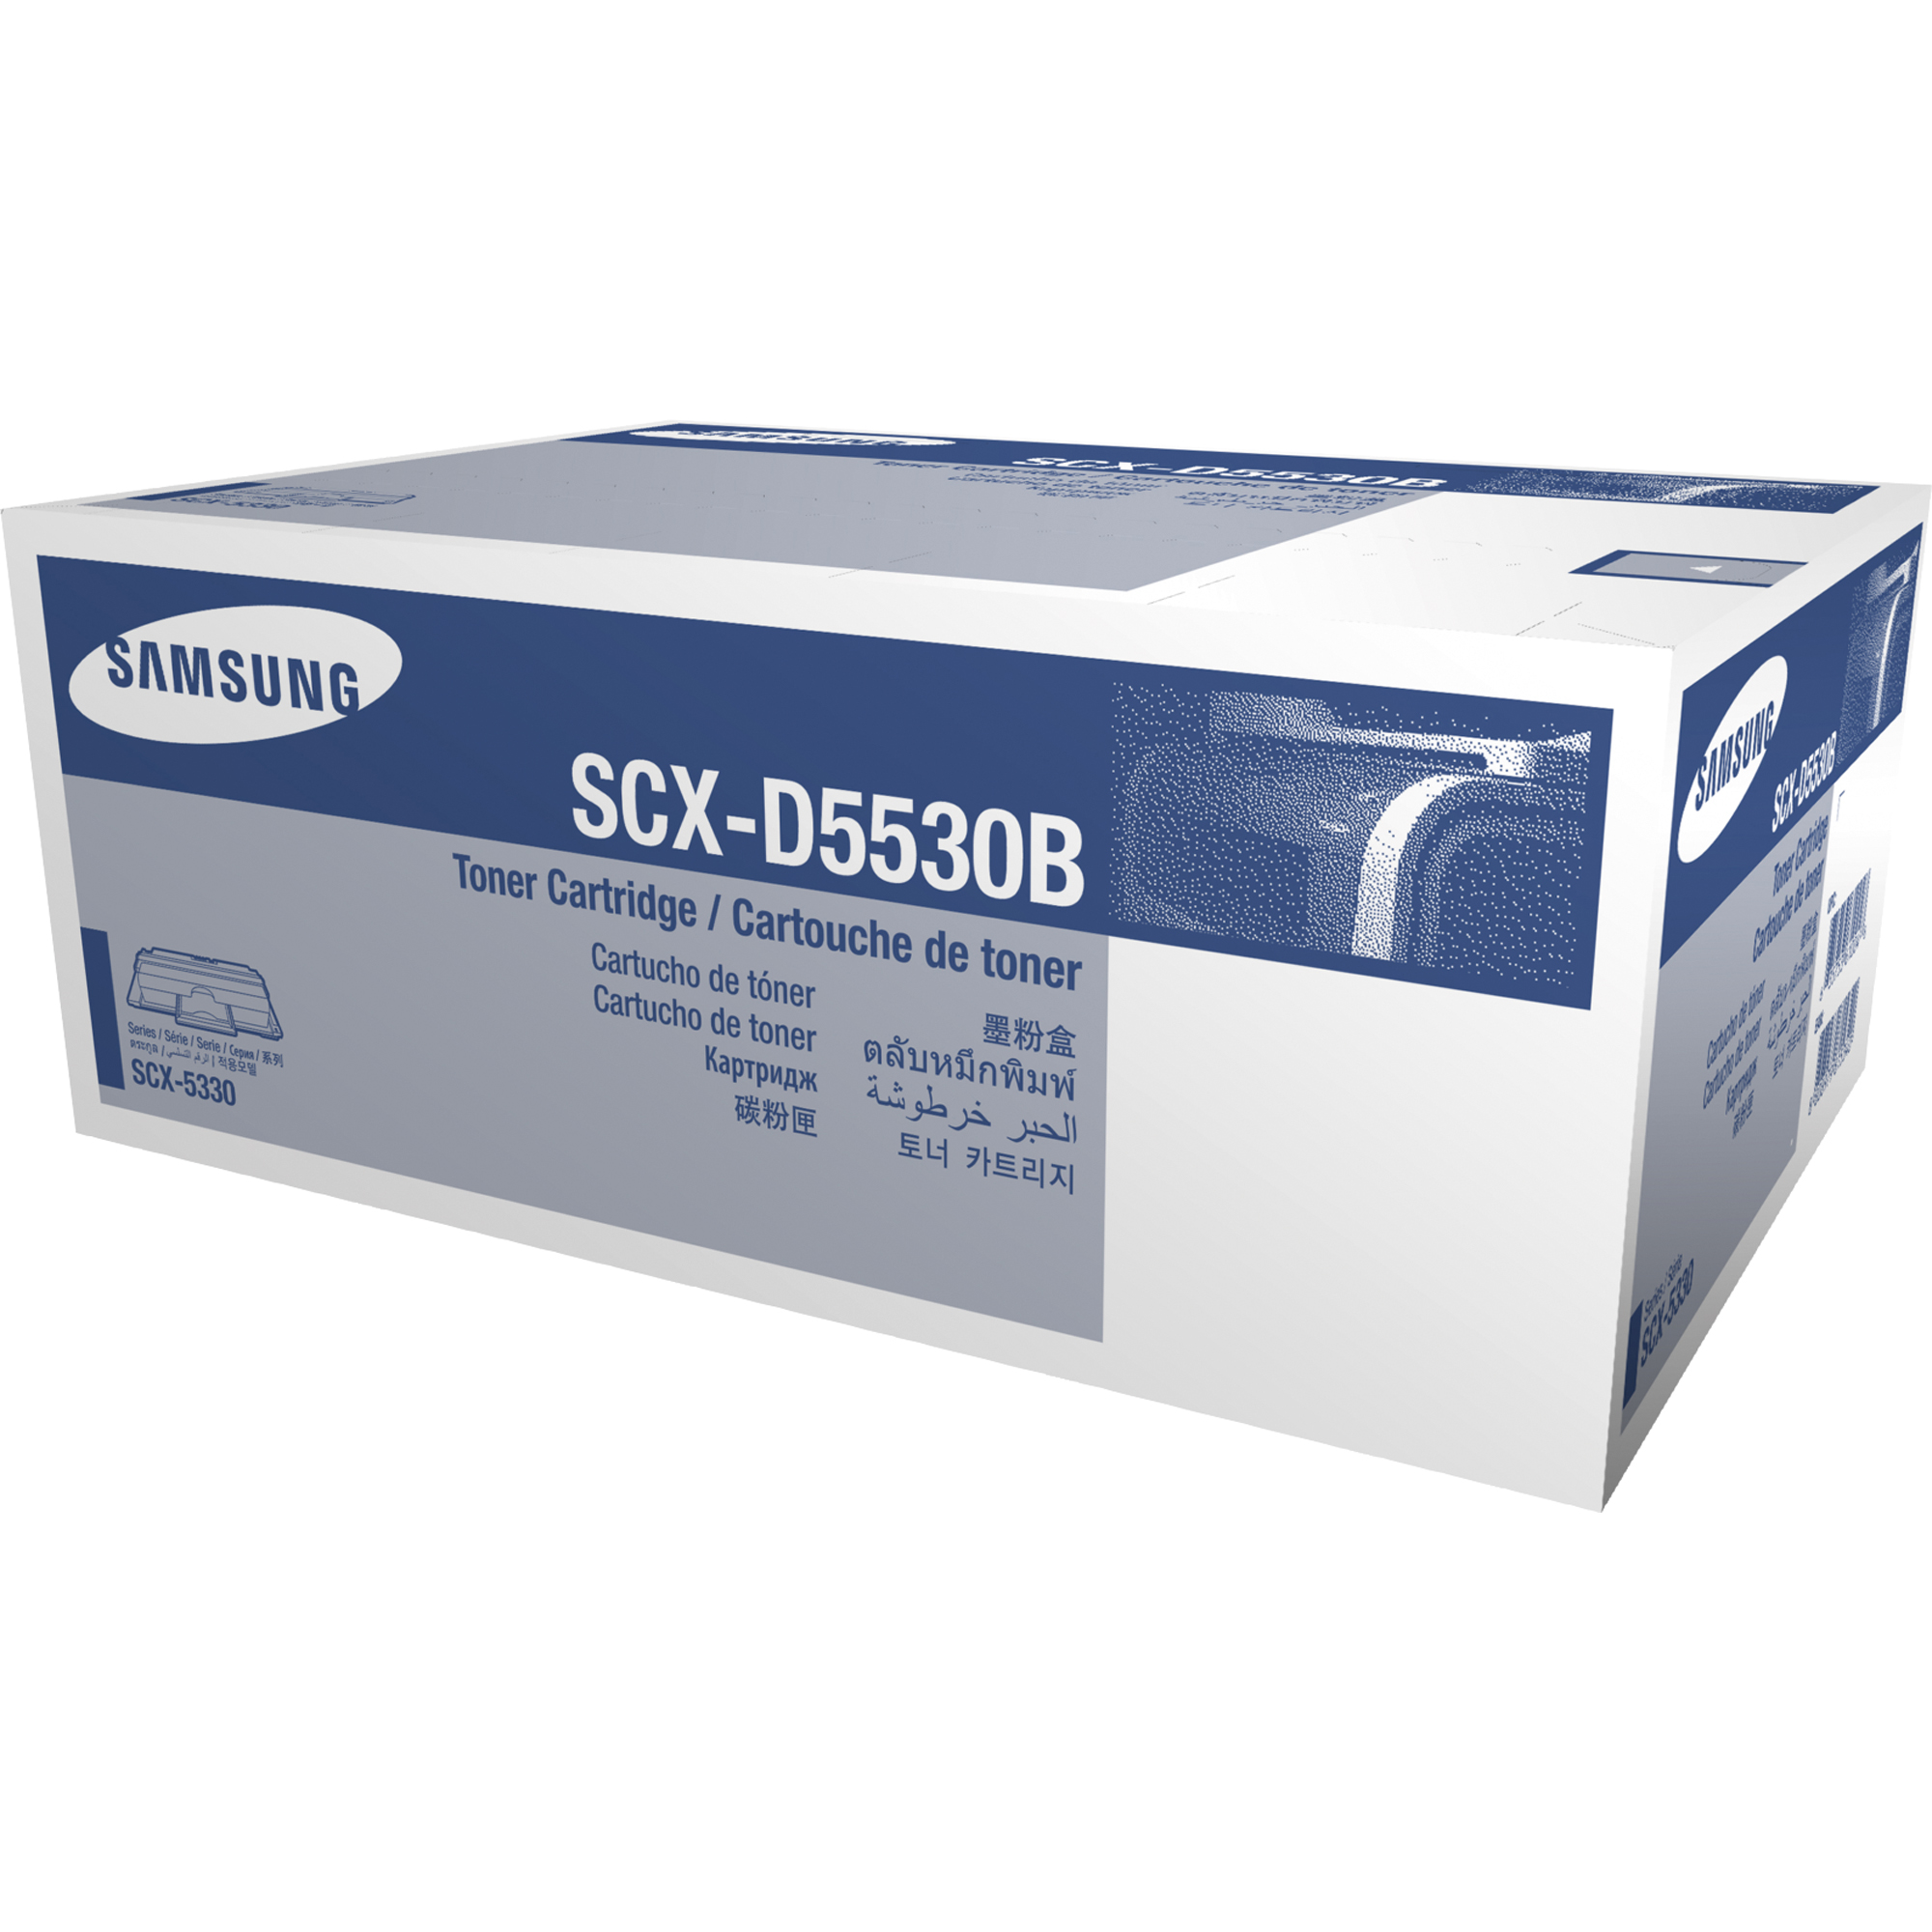 Samsung Toner SCX-D5530B